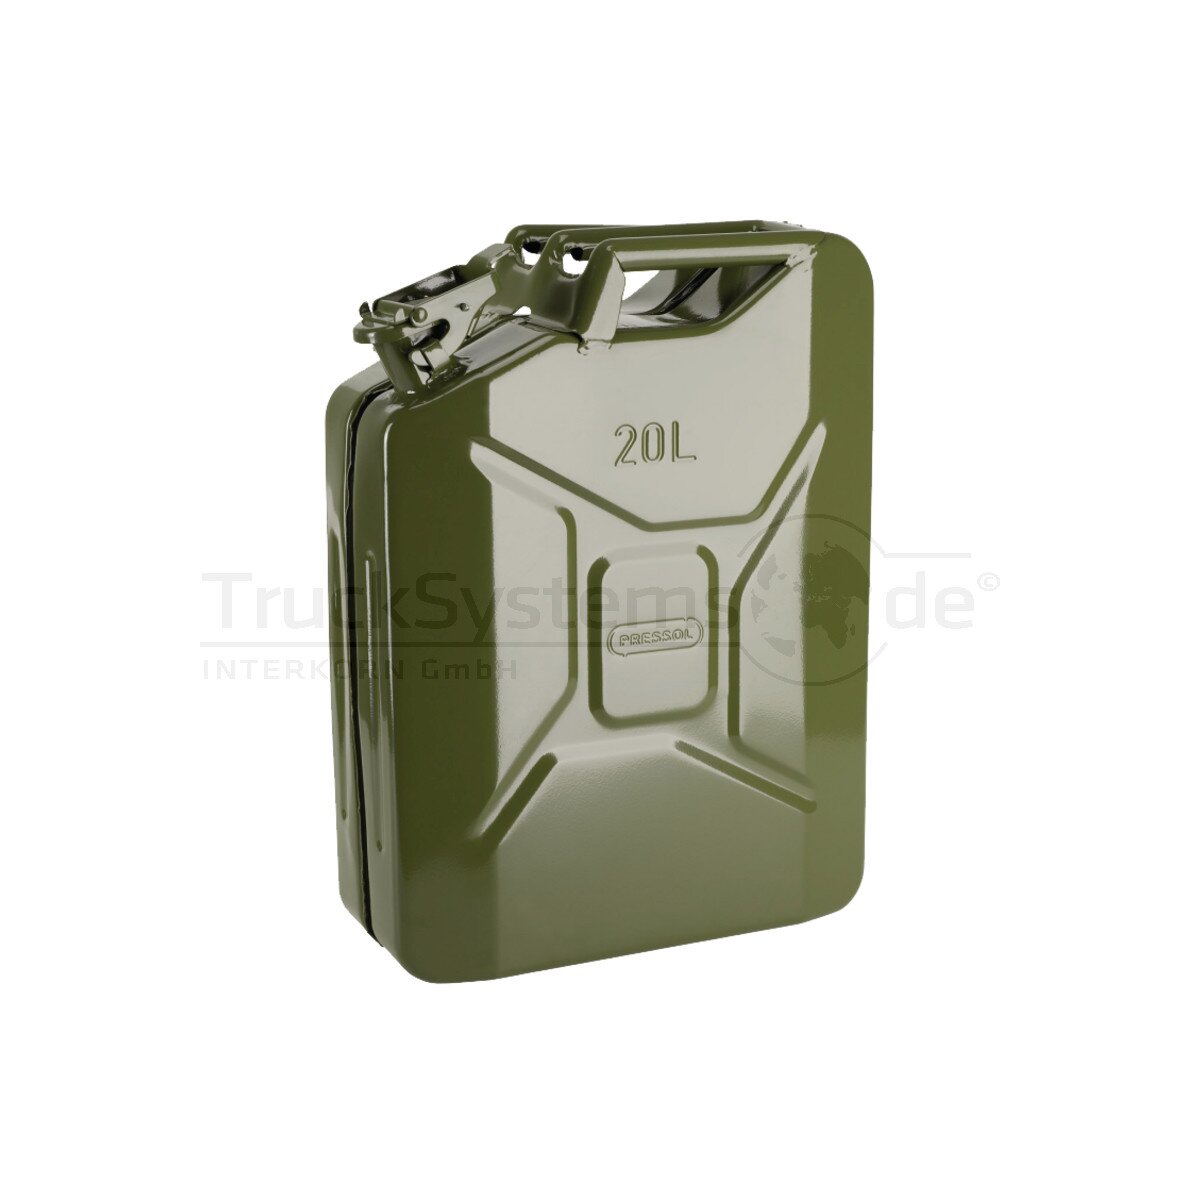 Benzinkanister UN oliv-grün Metall 20l - 10.127 - 4007928101273 - 101,  69,99 €